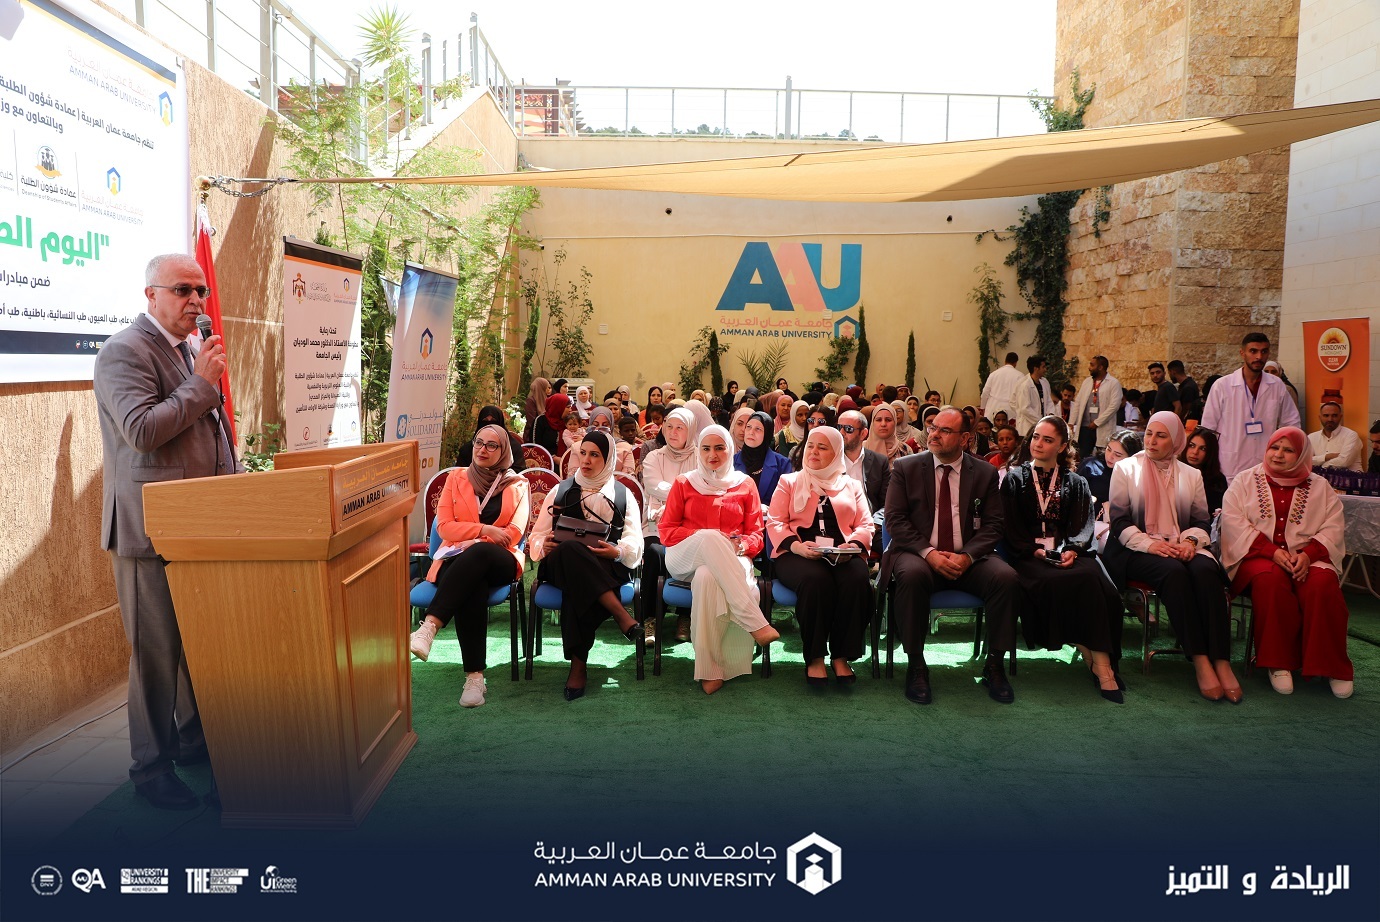 يوم طبي مجاني متميز في جامعة عمان العربية بمشاركة (40) طبيب ومؤسسة متخصصة